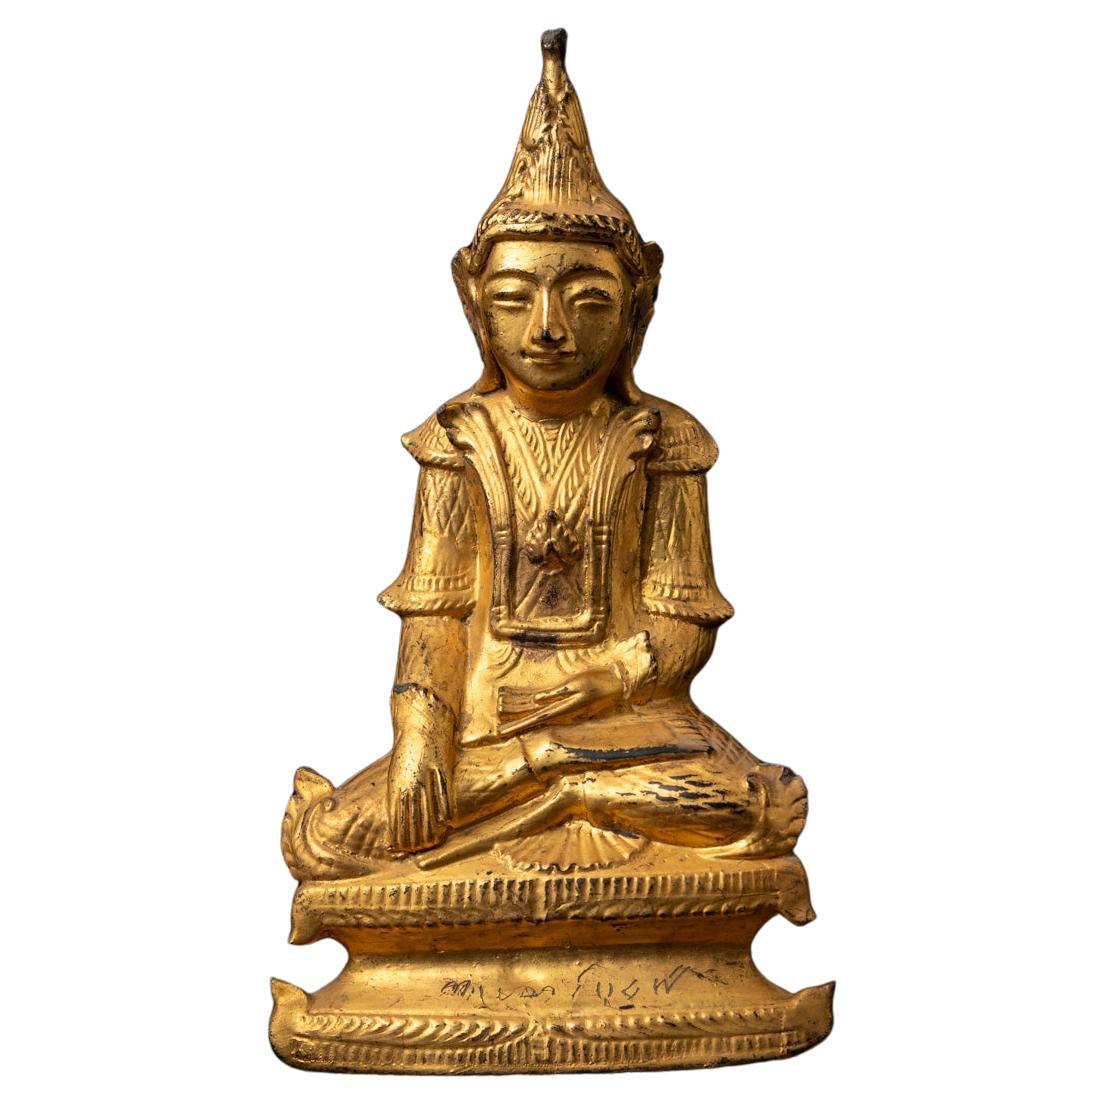 Antike burmesische Buddha-Statue aus Holz aus dem 19. Jahrhundert in Bhumisparsha Mudra